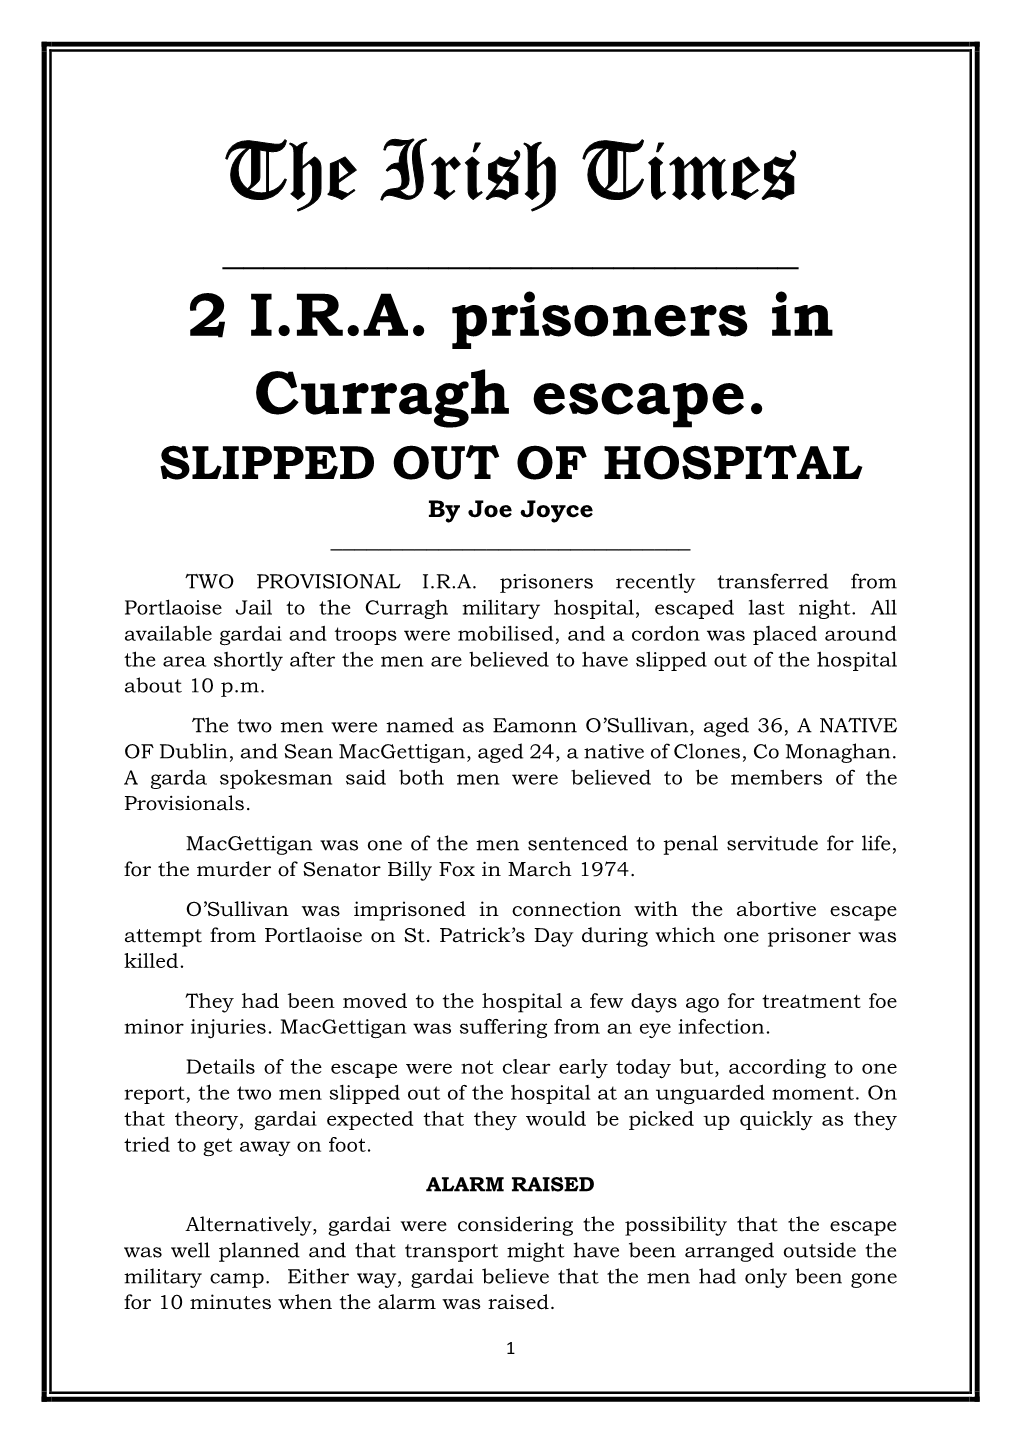 2 IRA Prisoners in Curragh Escape